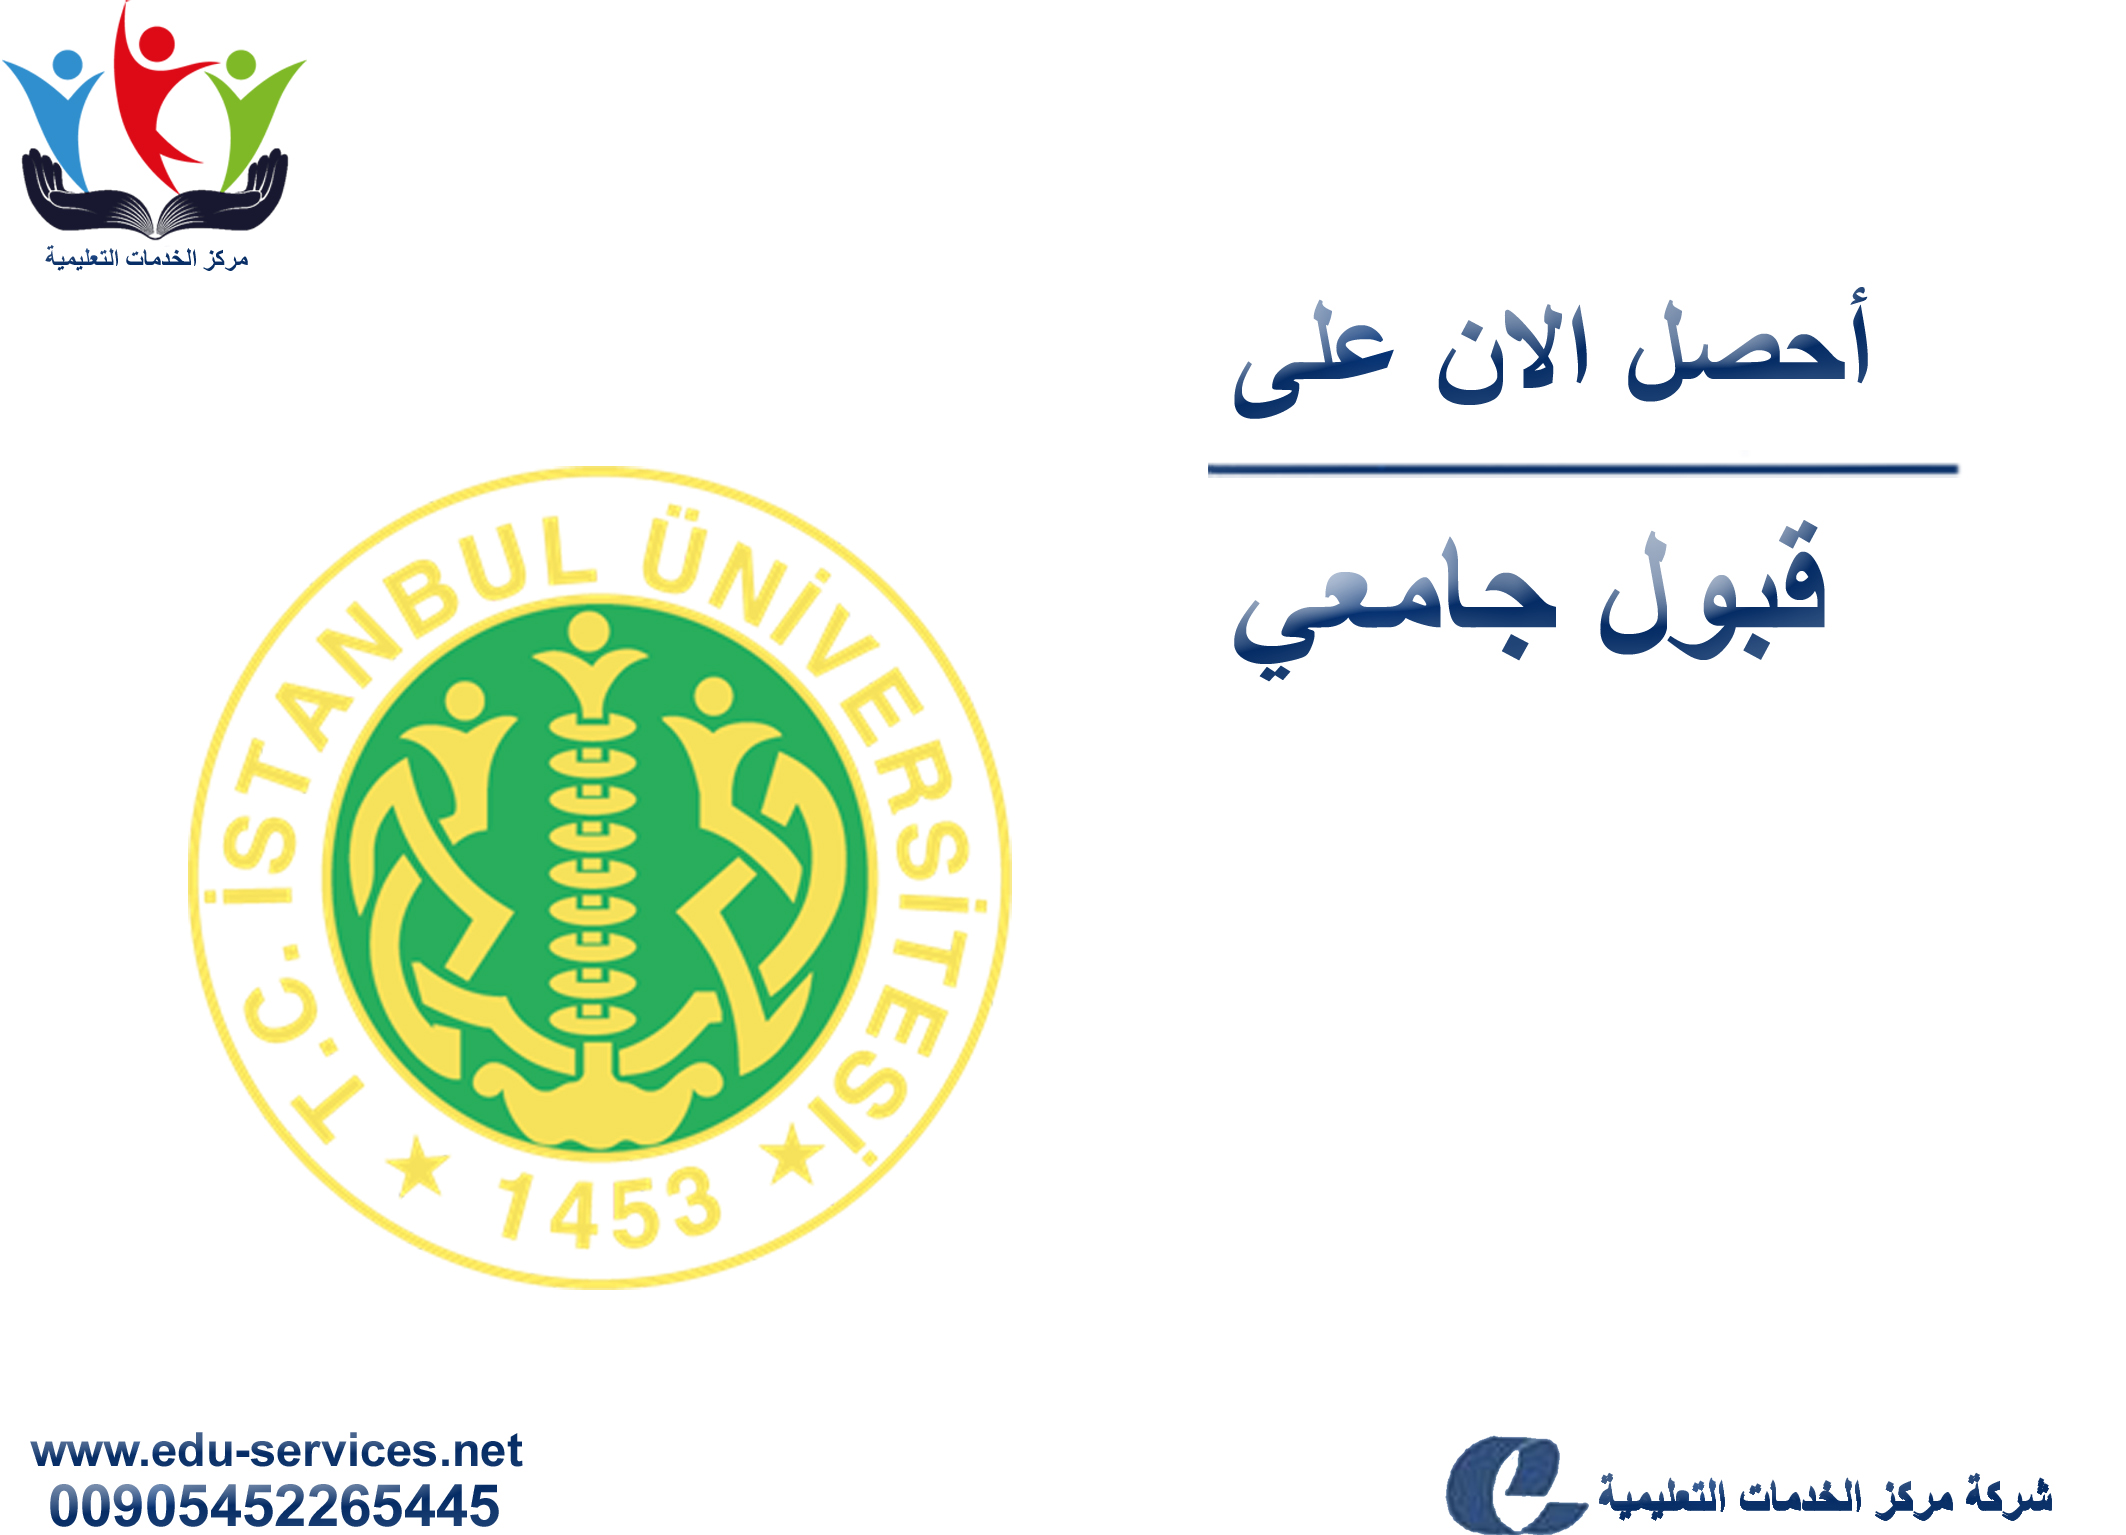 افتتاح التسجيل على جامعة اسطنبول للدراسات العليا للفصل الدراسي الثاني 2019/2018